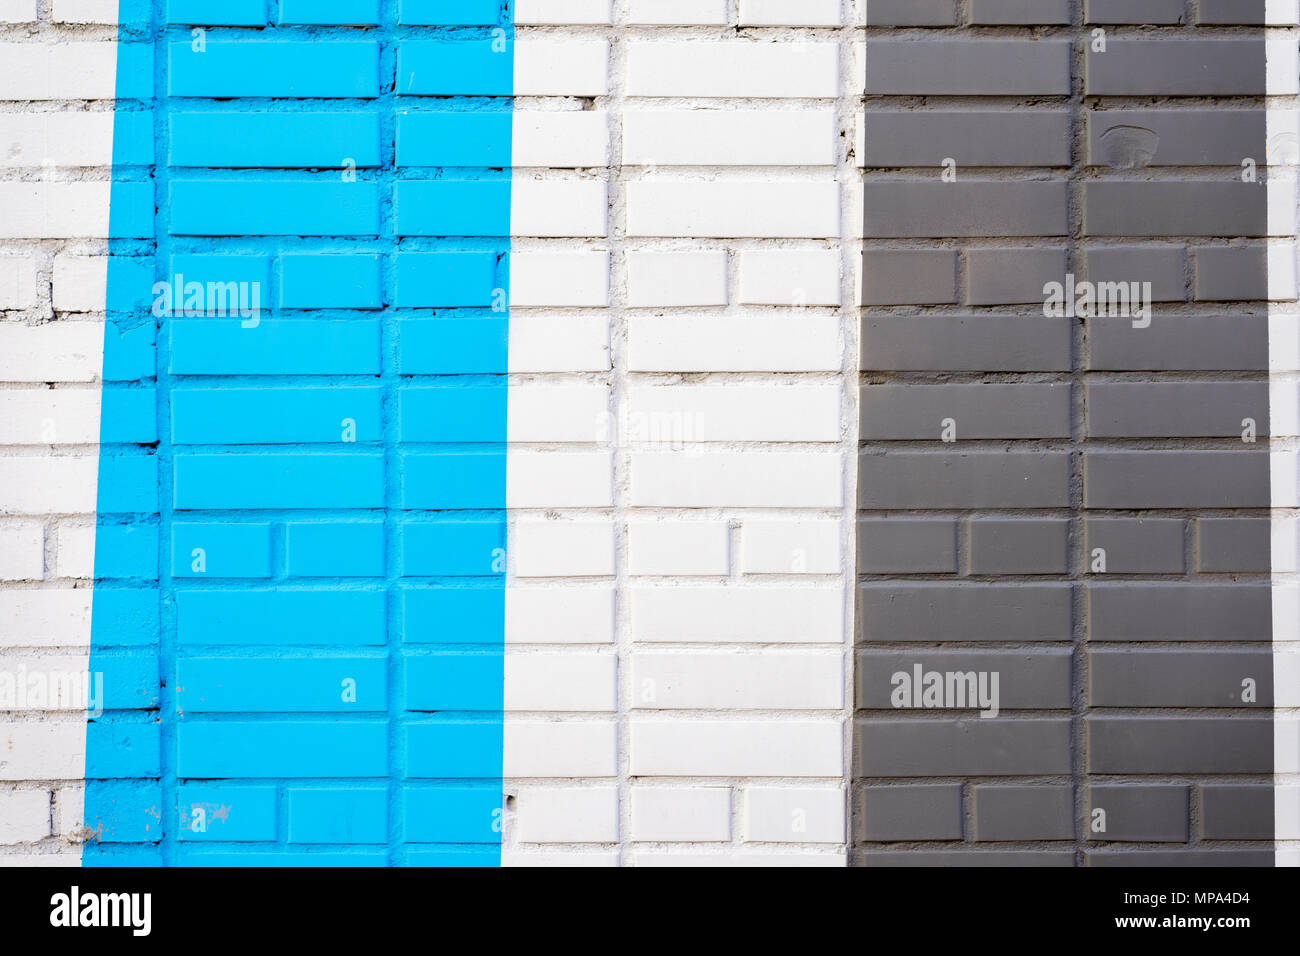 Briques verticalement peint surface de mur en noir et la couleur bleue, comme les graffitis. Texture grunge graphique de mur. Résumé Contexte moderne Banque D'Images